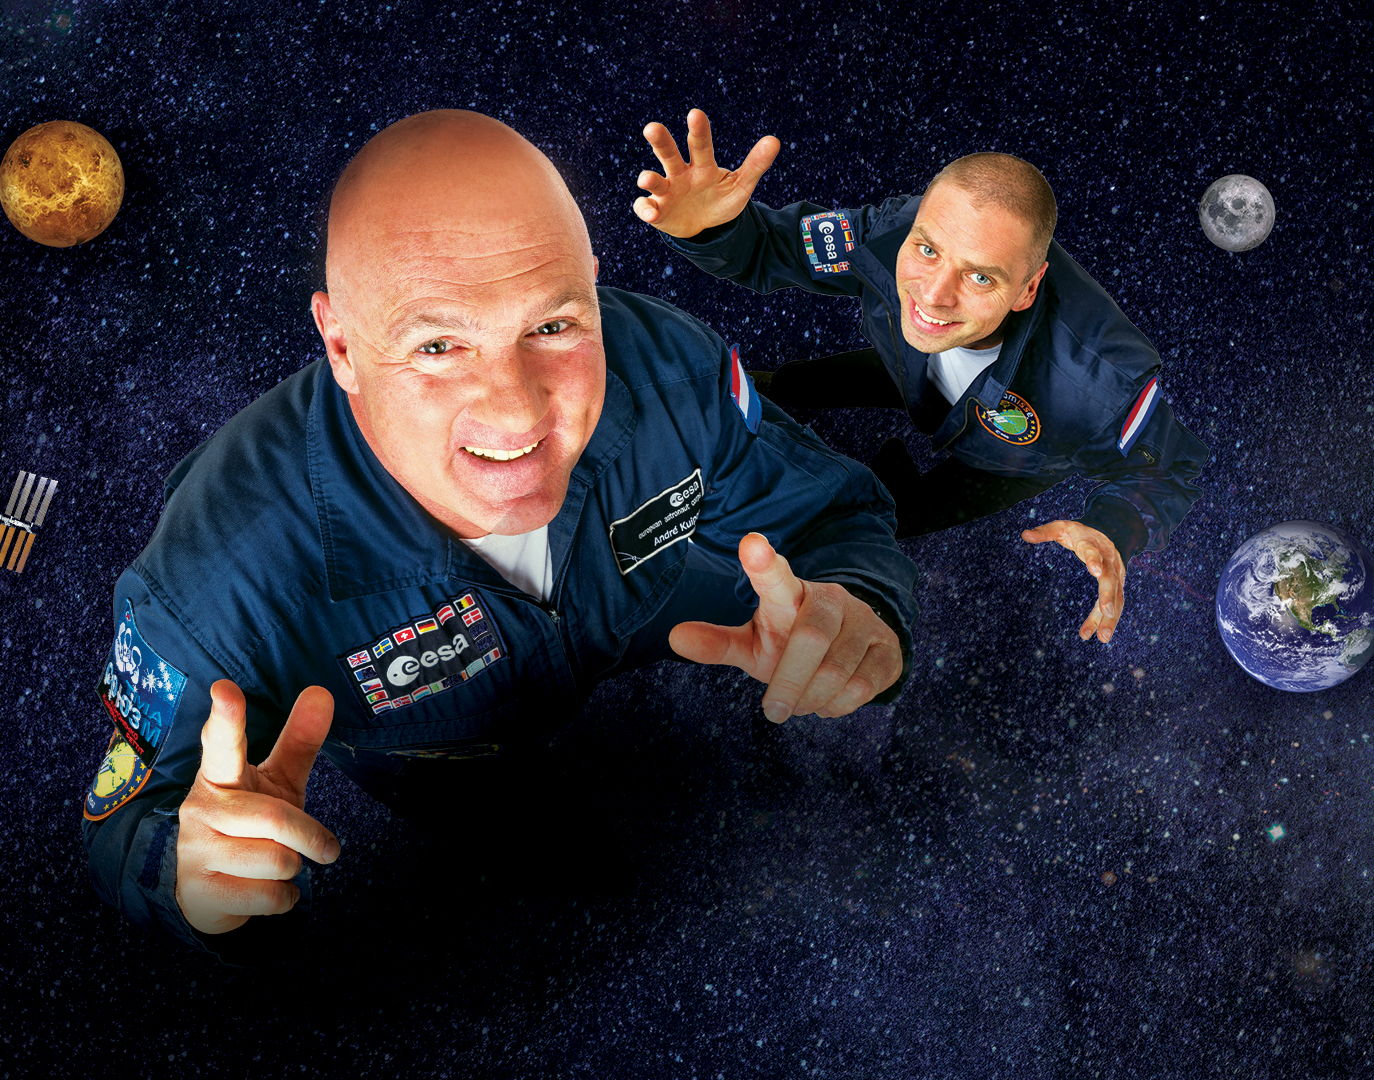 Reis met André Kuipers en Sander Koenen naar de verste hoeken van het heelal en waan jezelf astronaut. Leer alles over de ruimtevaart, hoe het is om te zweven en stel jouw vraag aan Nederlands enige astronaut.